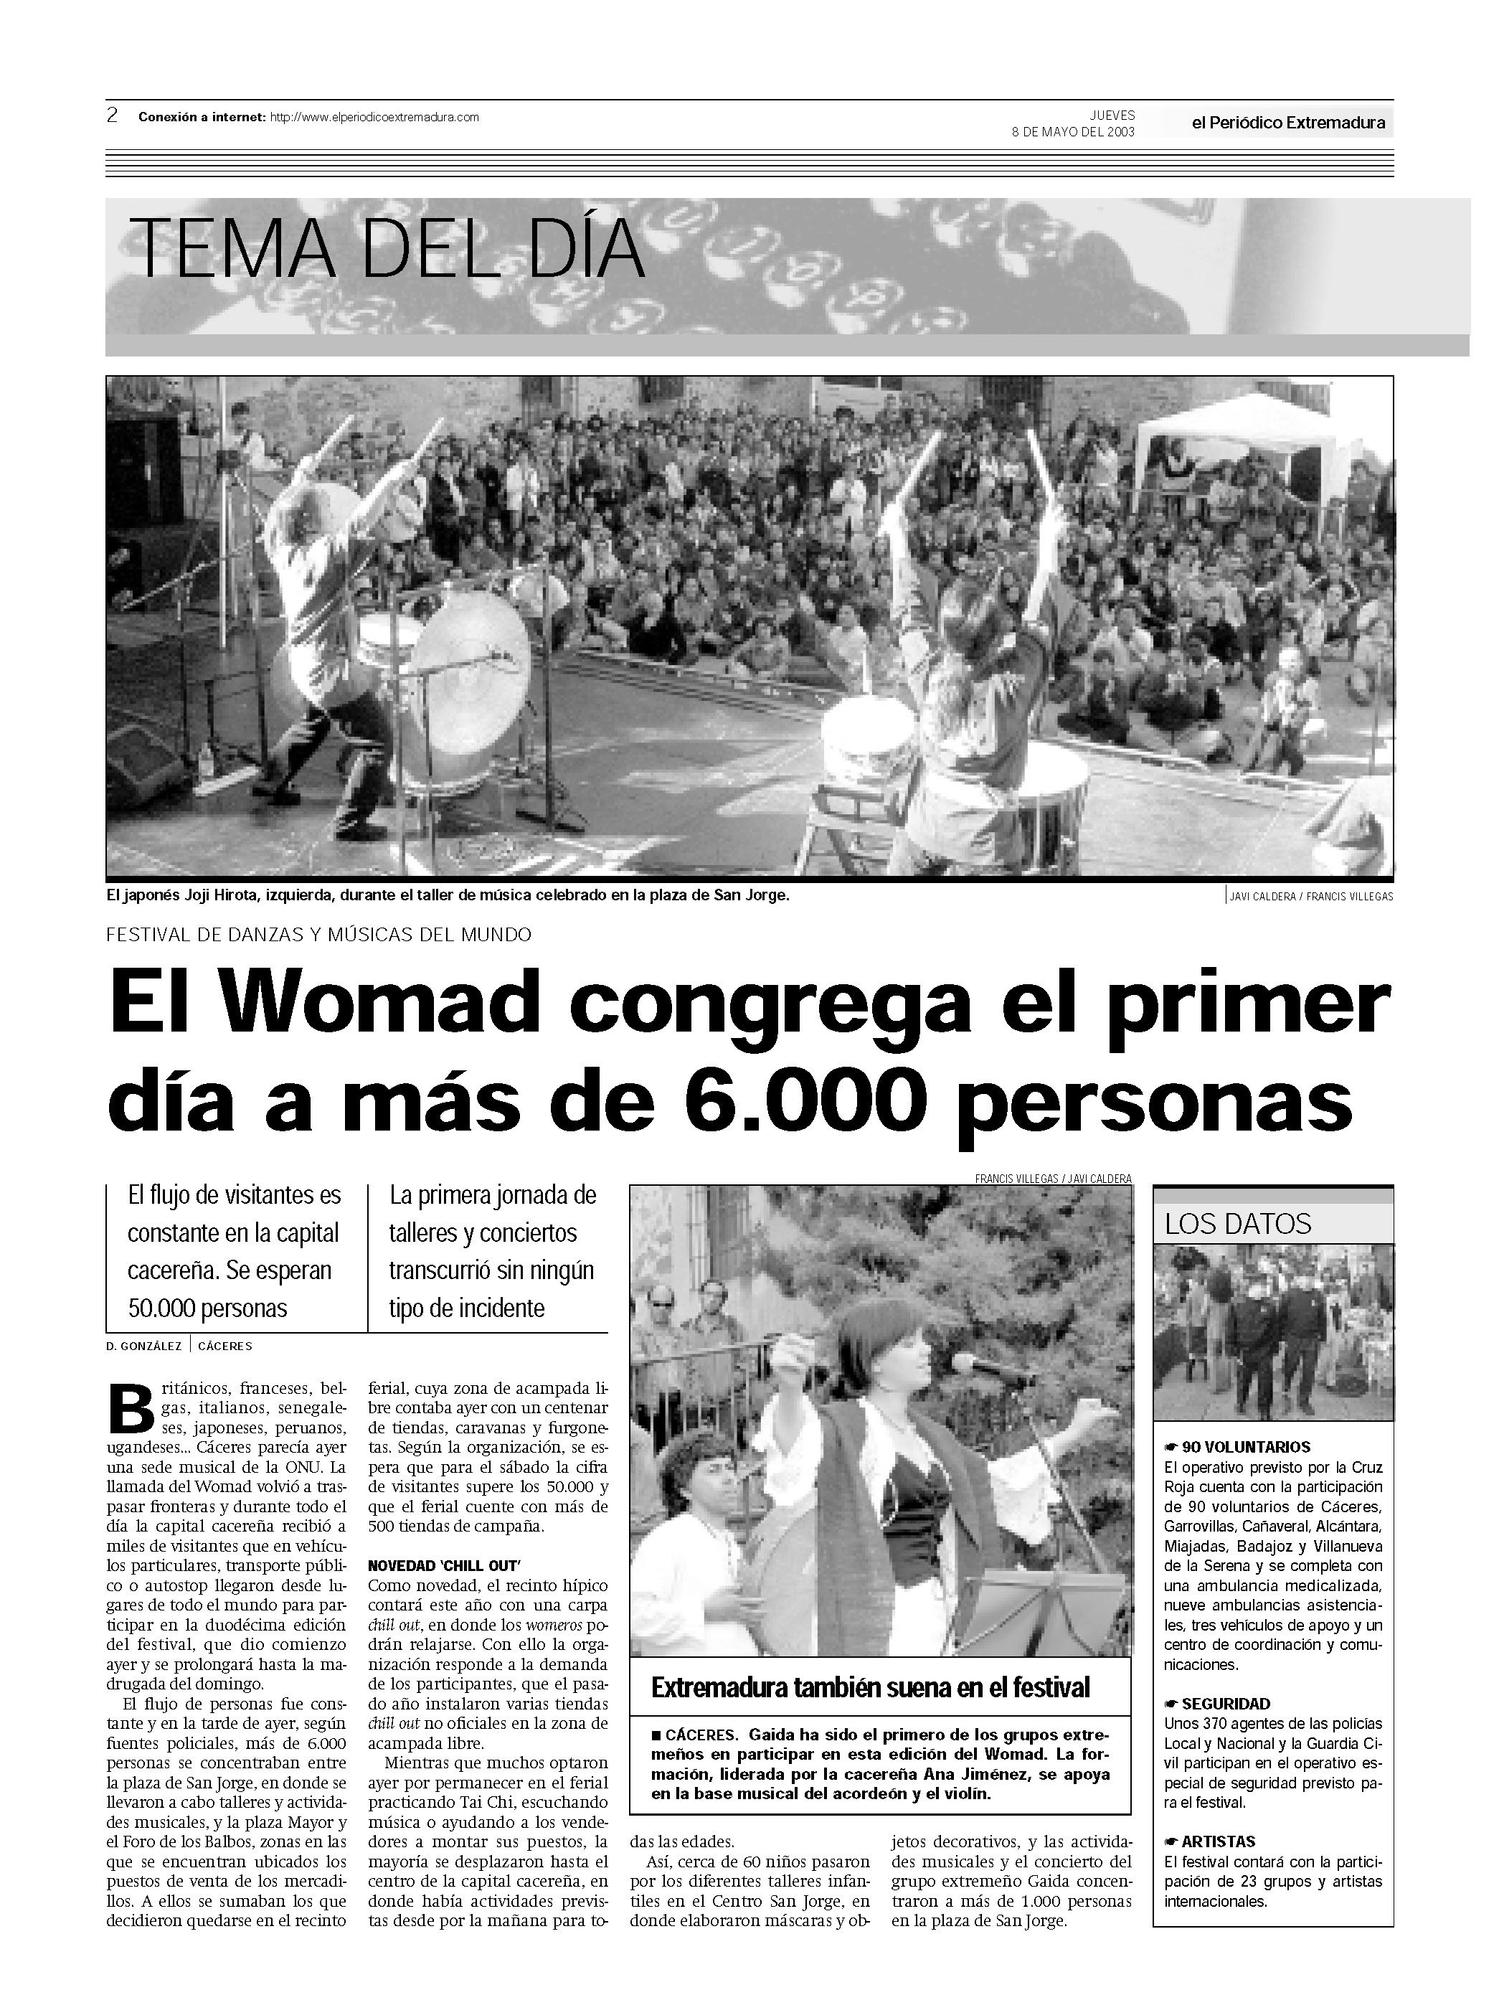 Página de El Periódico Extremadura el 8 de mayo de 2003.